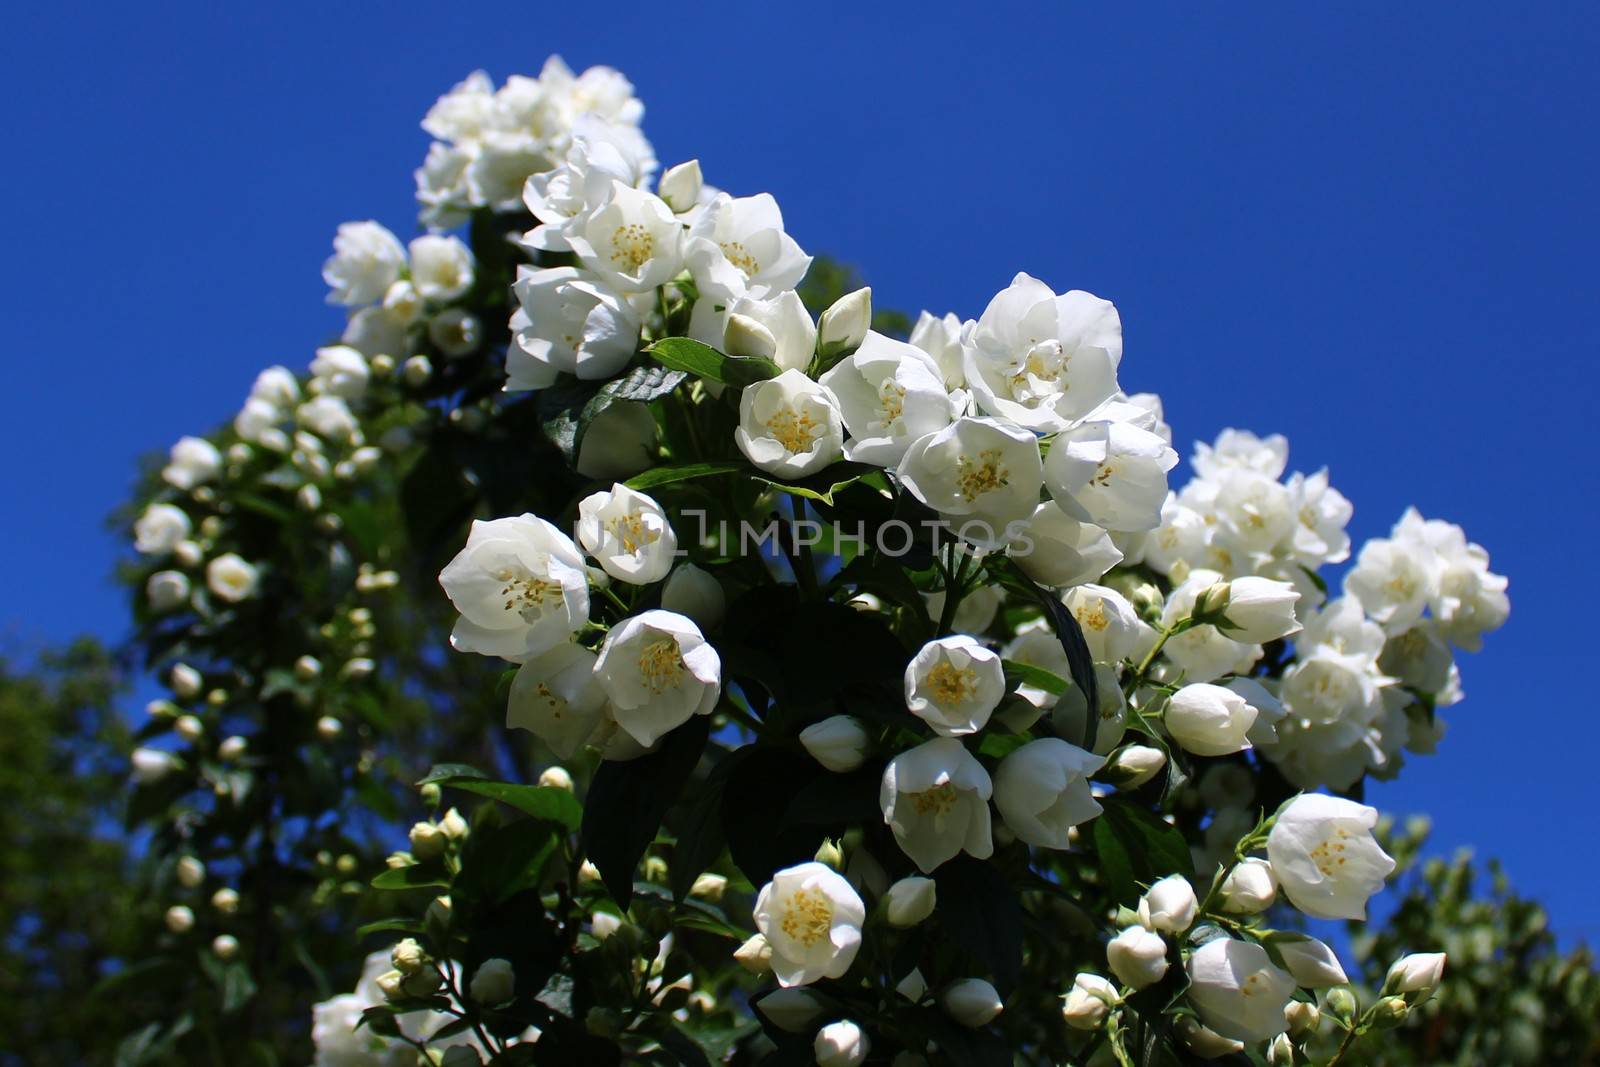 white jasmine in the garden by martina_unbehauen